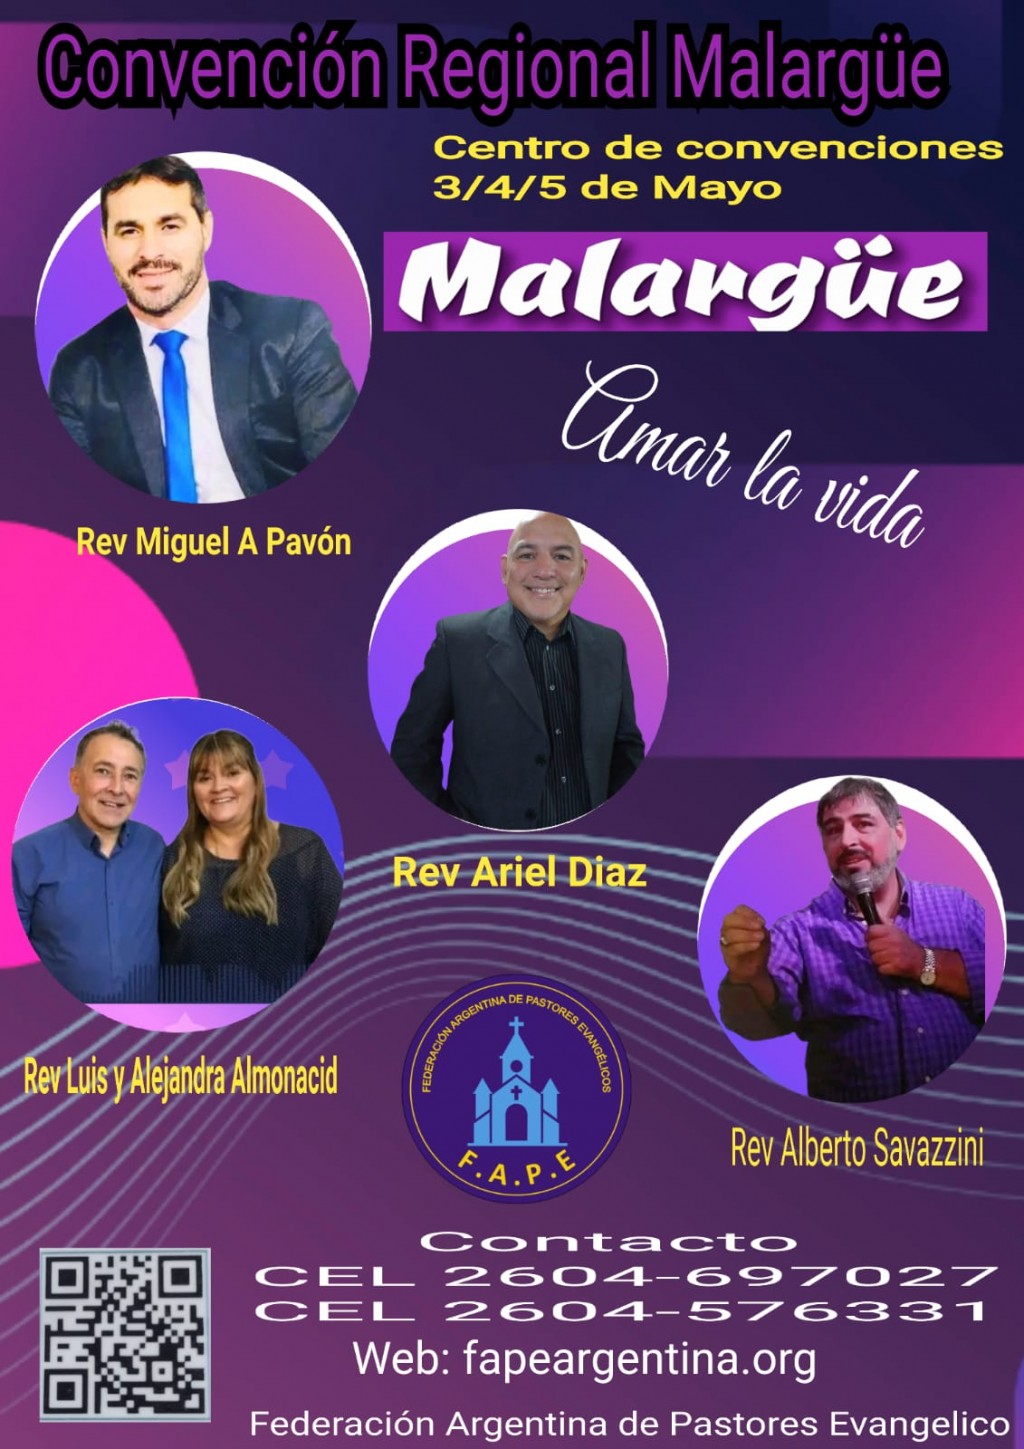 Federación Argentina de Pastores Evangélicos Presenta: Convención Regional 'Amar la Vida' en Malargüe, Mendoza